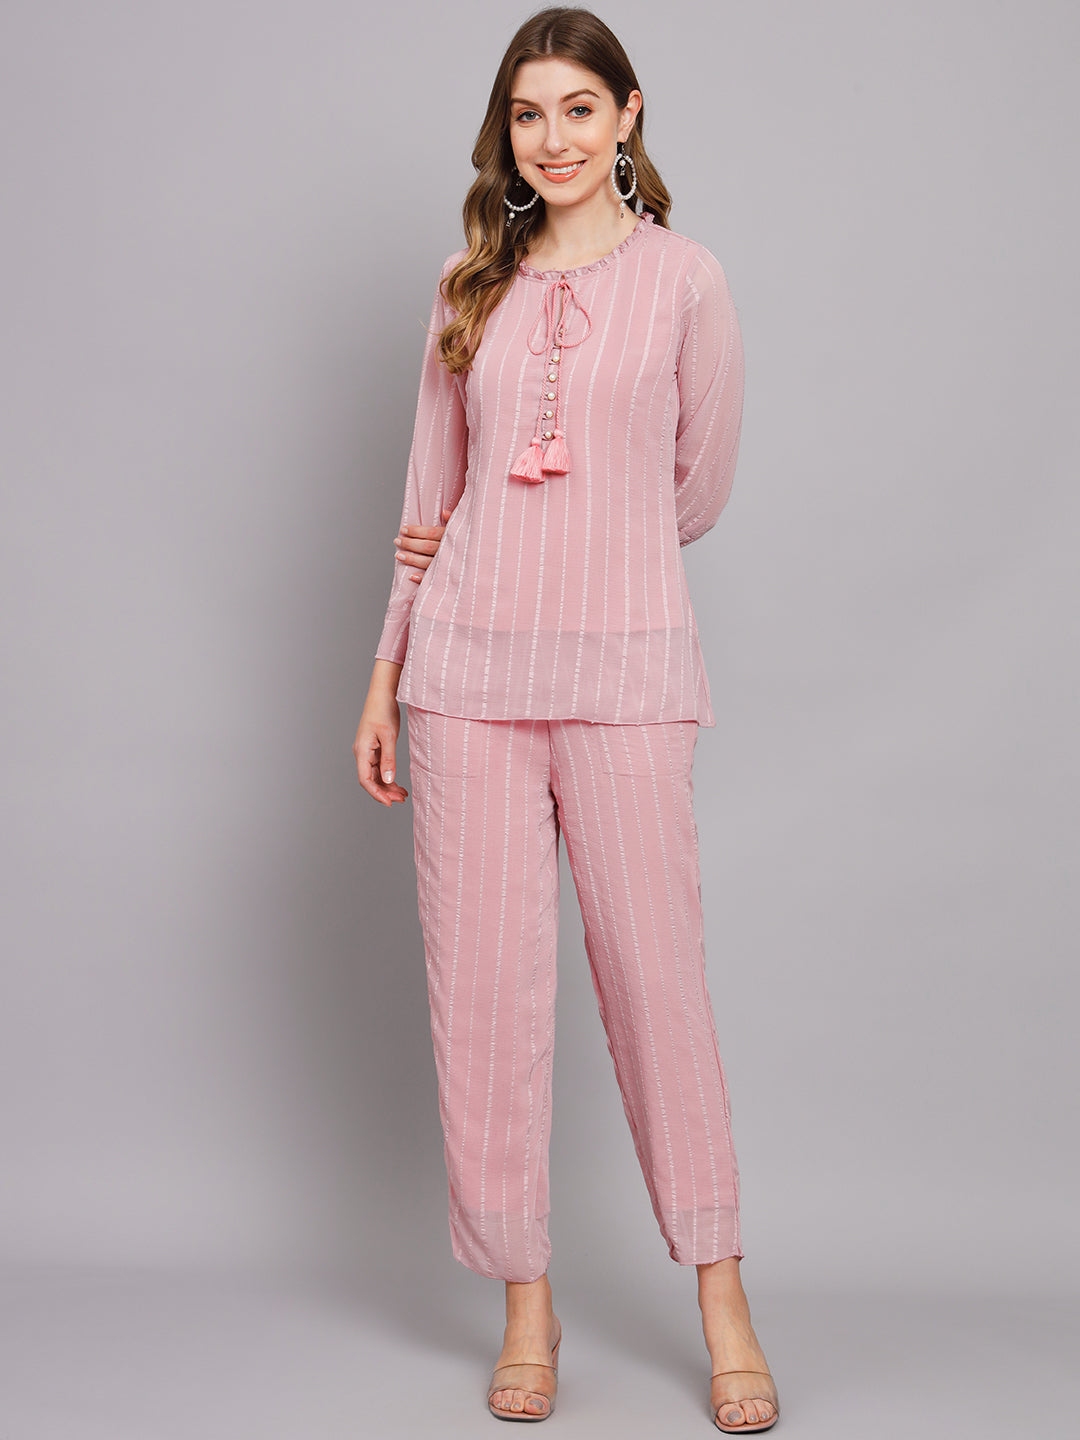 Women's Pink Chiffon Straight Night Suit